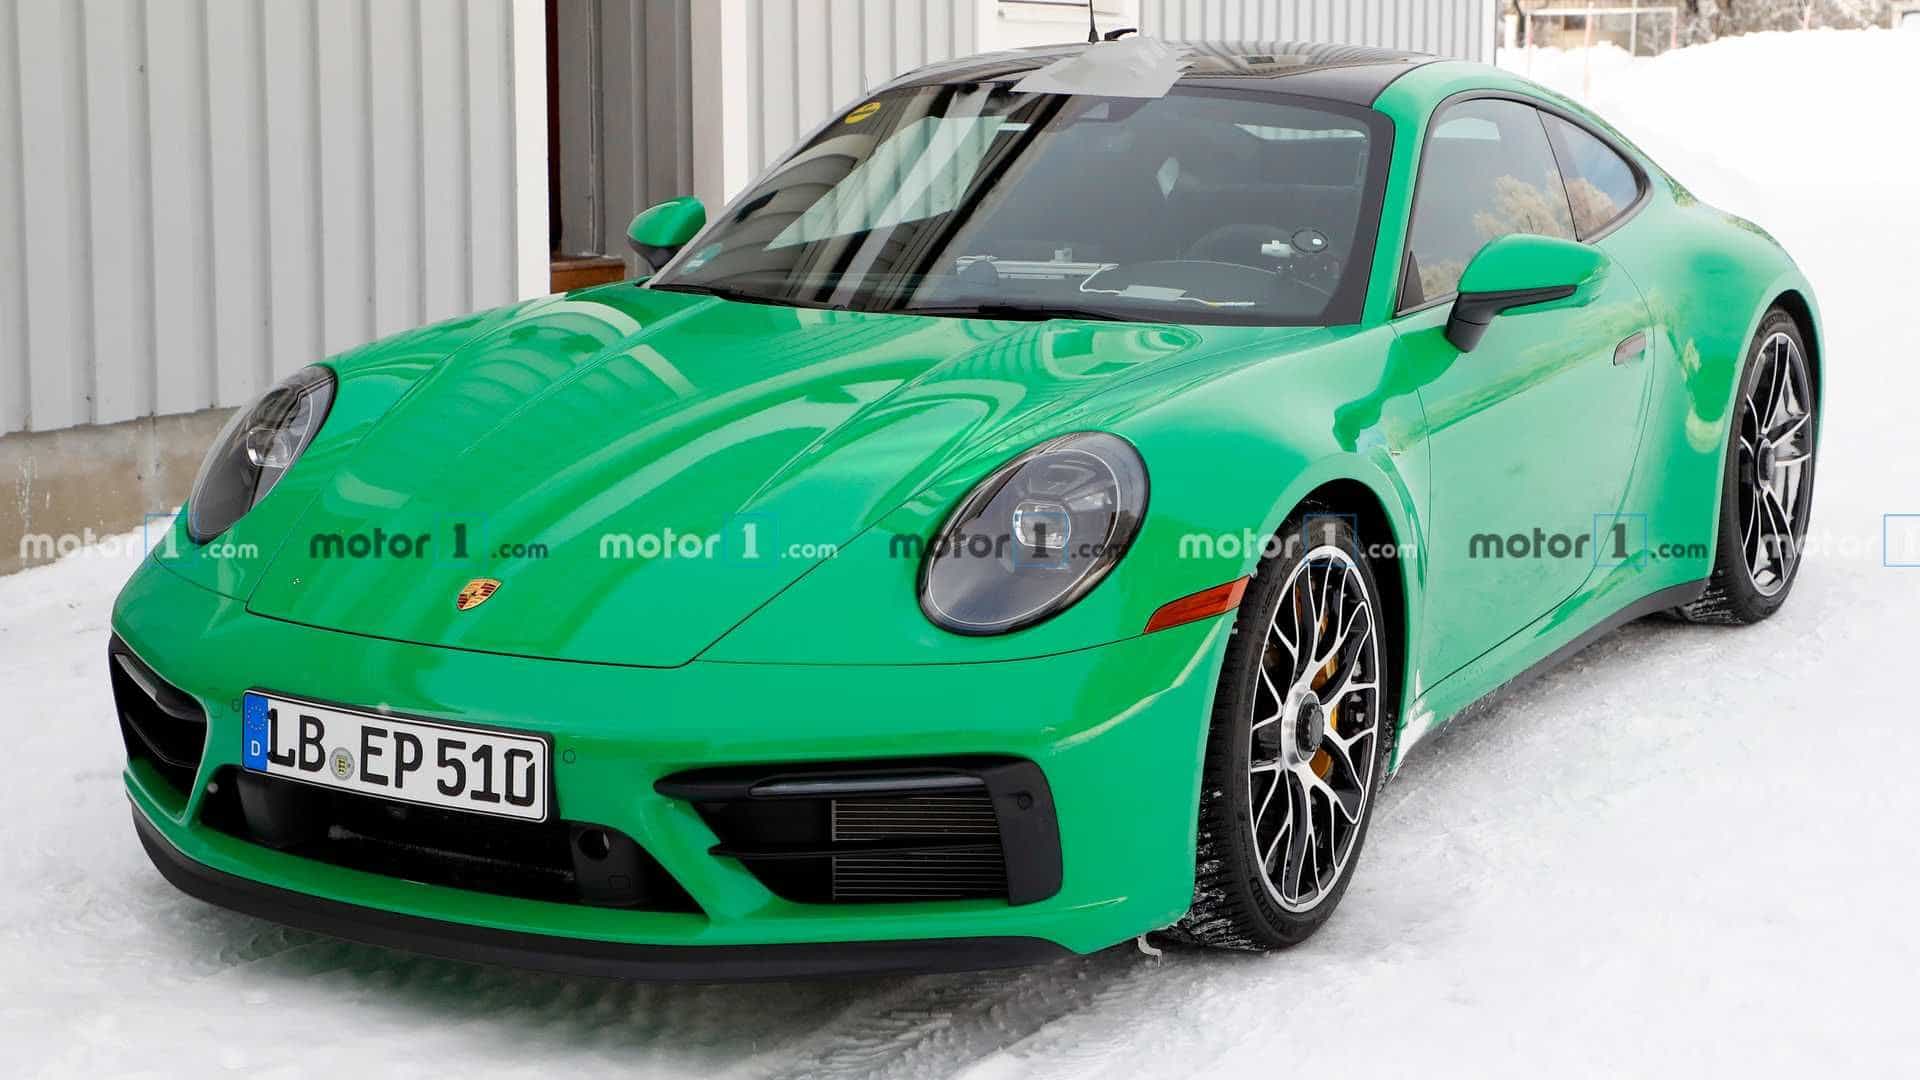 992 GTS - Page 3 - Rennlist - Porsche Discussion Forums